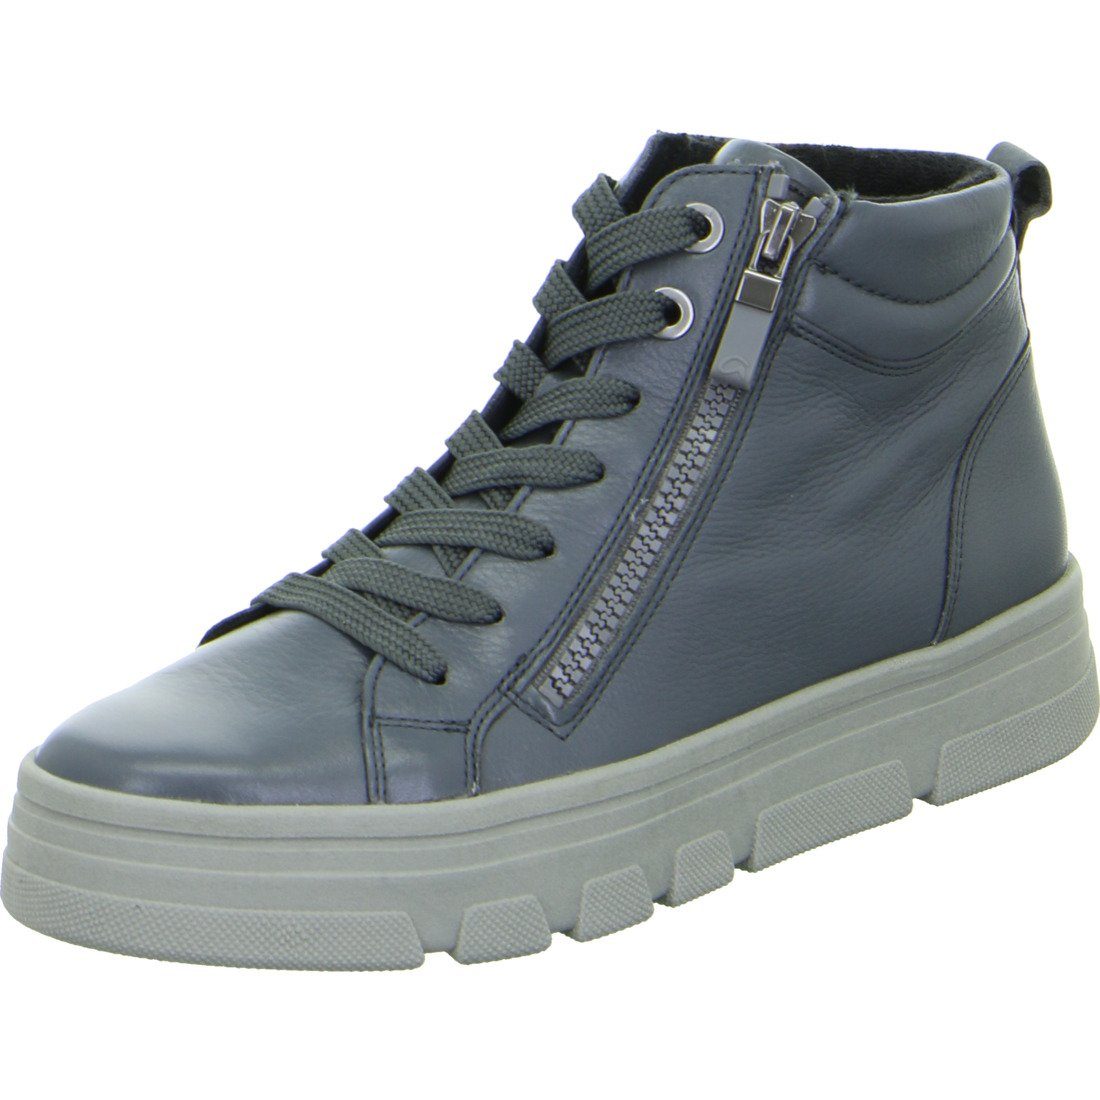 Ara Ara Schuhe, Sneaker Canberra - Lackleder Damen Sneaker grau 049675